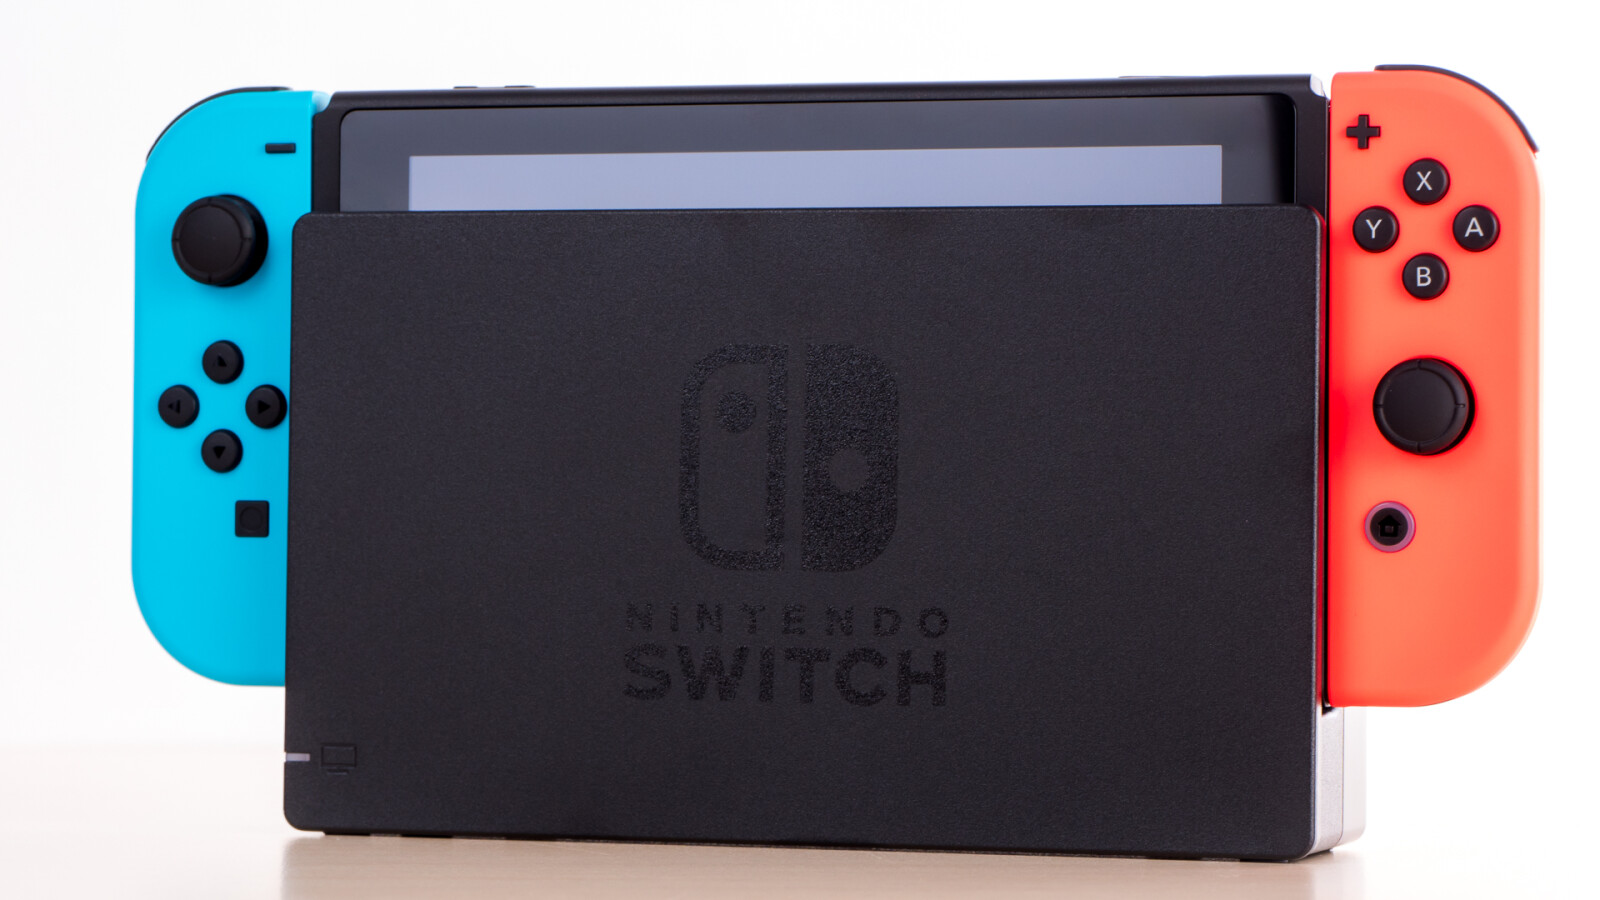 Nintendo Switch 2. Nintendo Switch Pro. Nintendo switch 1 2 switch